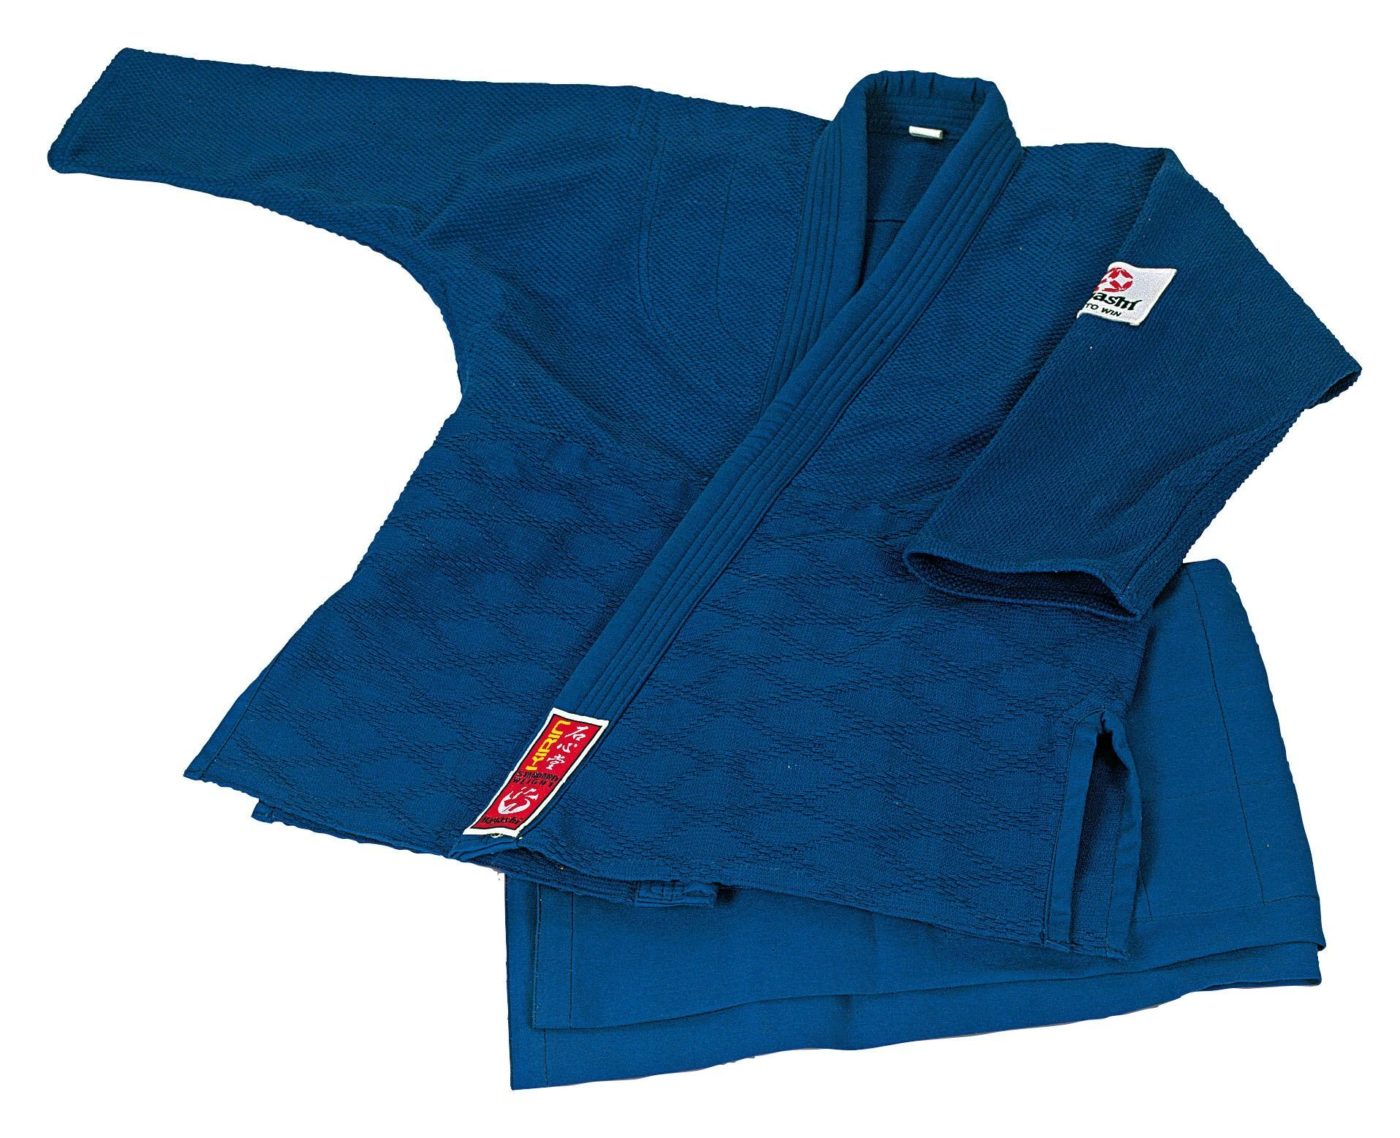 Hayashi Judopak “Kirin” Blauw